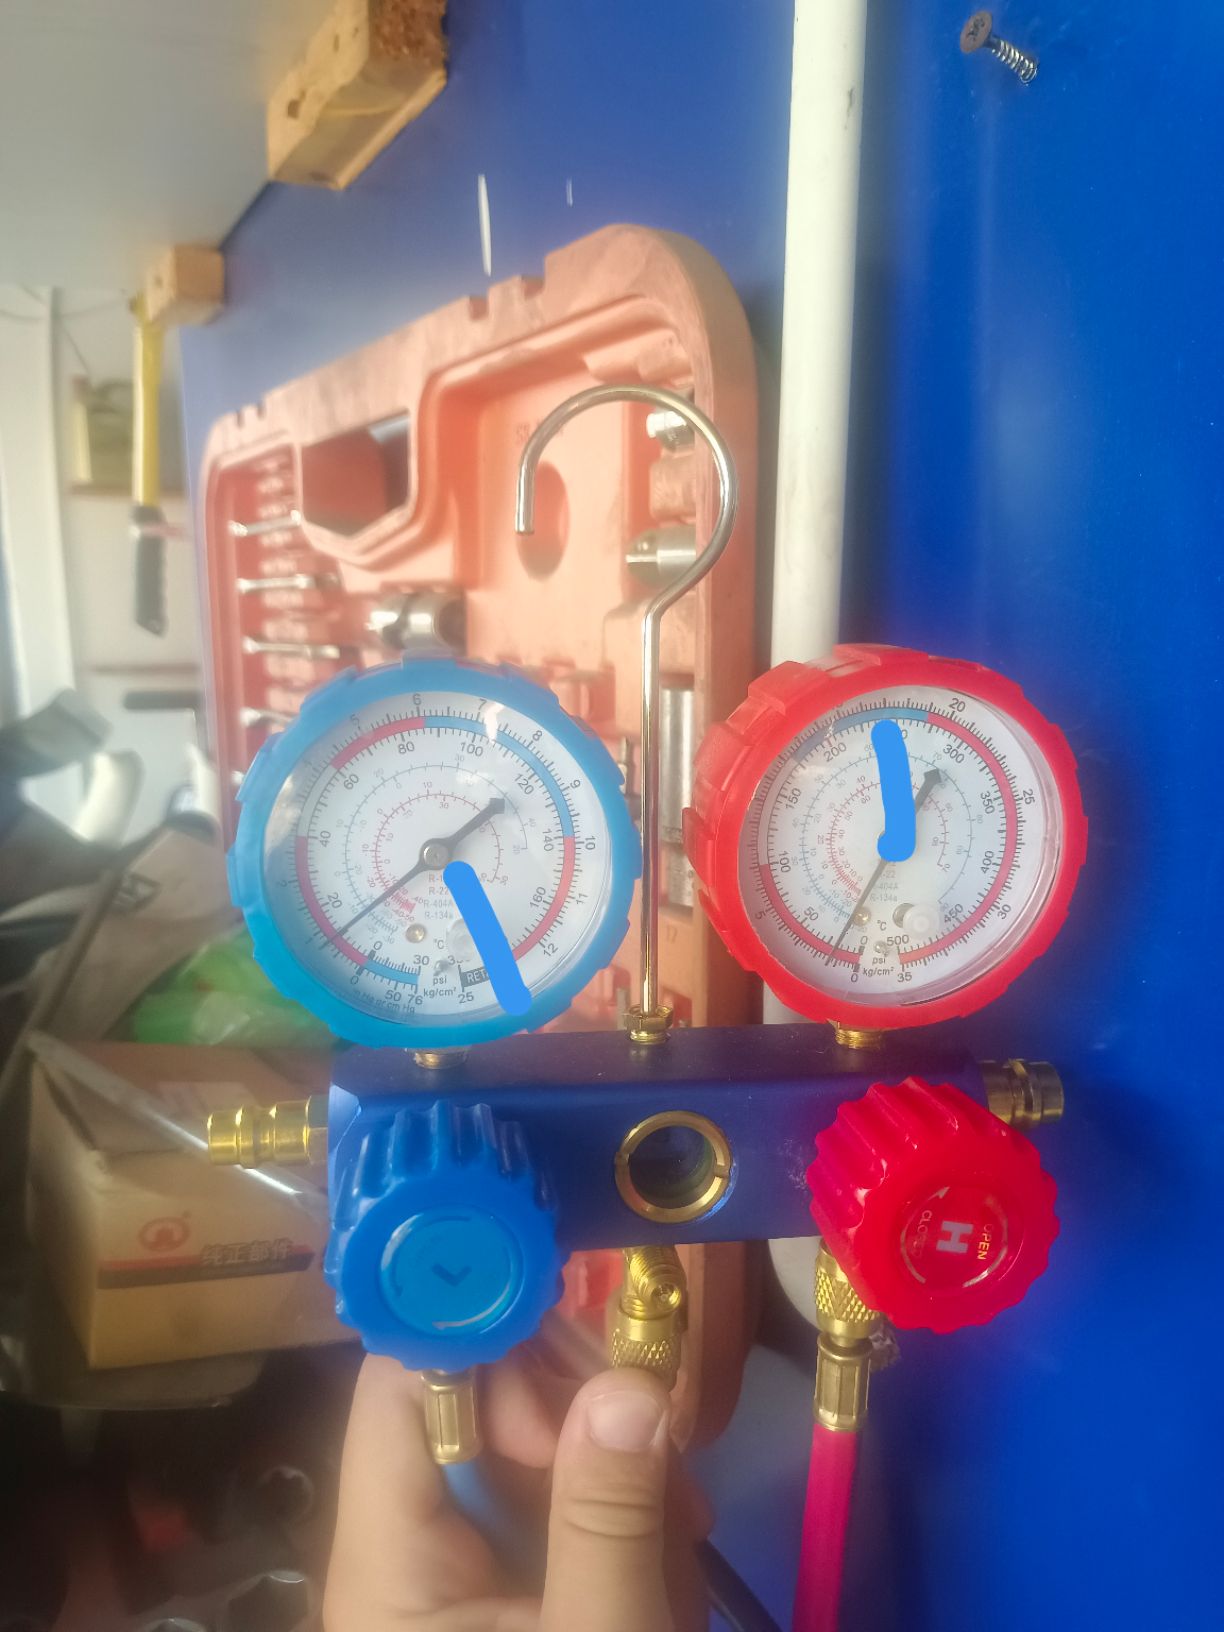 空调低压表到头了，高压表正常压力值，是不是膨胀阀_